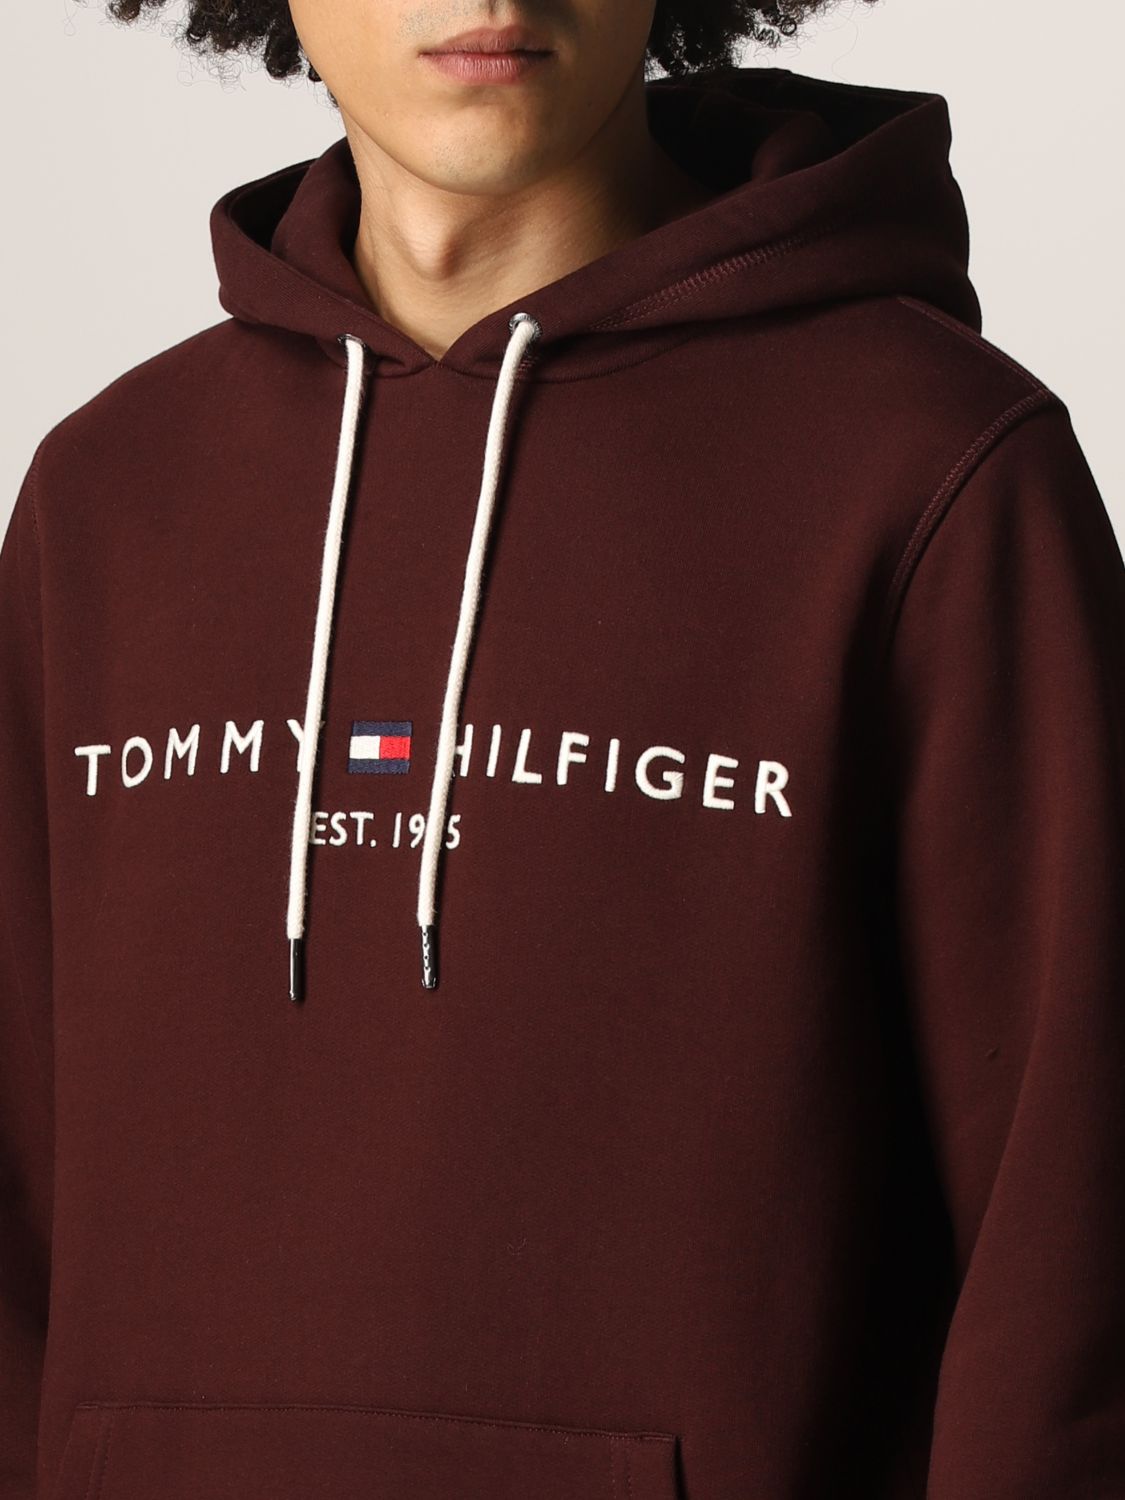 TOMMY HILFIGER: Sweatshirt men | Hilfiger Men Burgundy | Tommy Hilfiger MW0MW11599 GIGLIO.COM